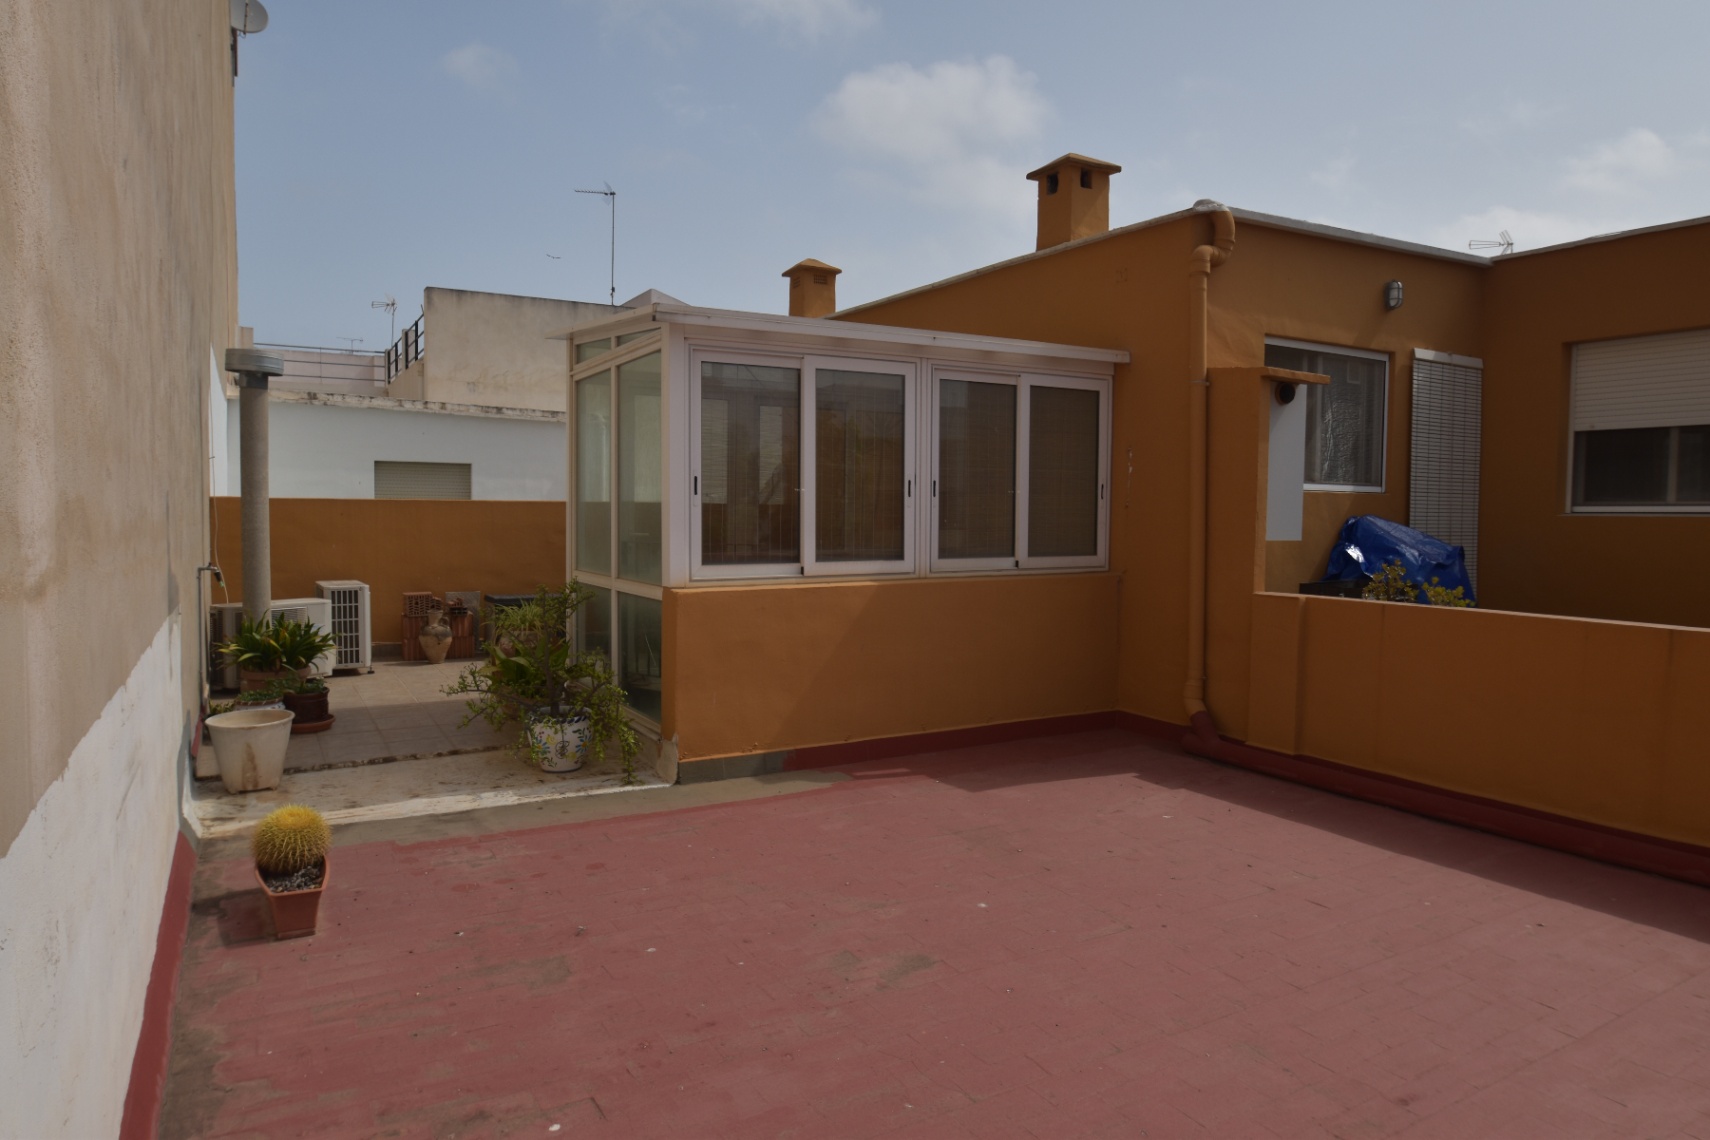 Volledig gerenoveerd dorpshuis met zonnig dakterras in het hart van El Vergel. Perfecte staat!